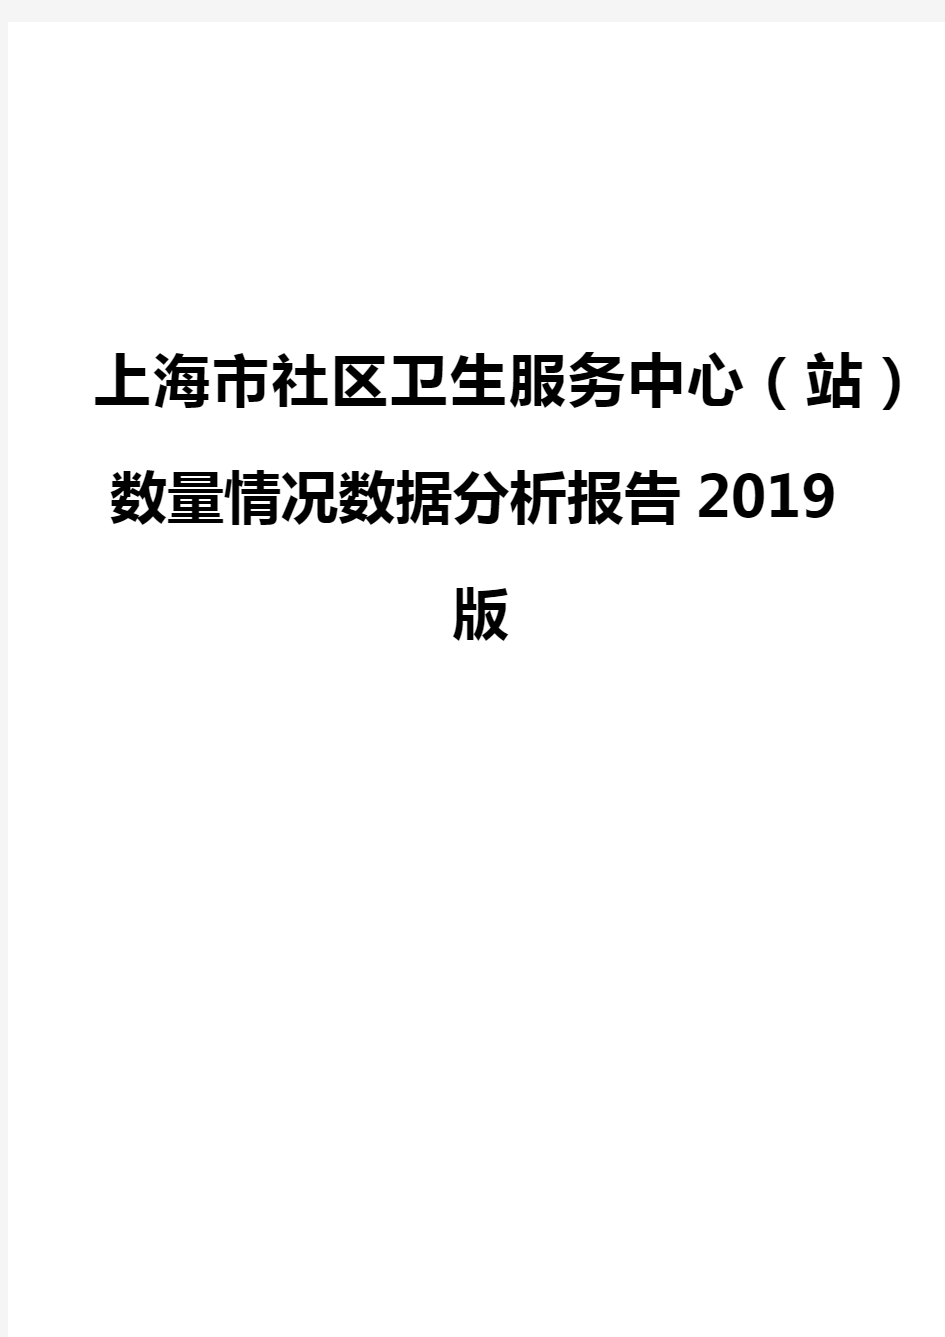 上海市社区卫生服务中心(站)数量情况数据分析报告2019版